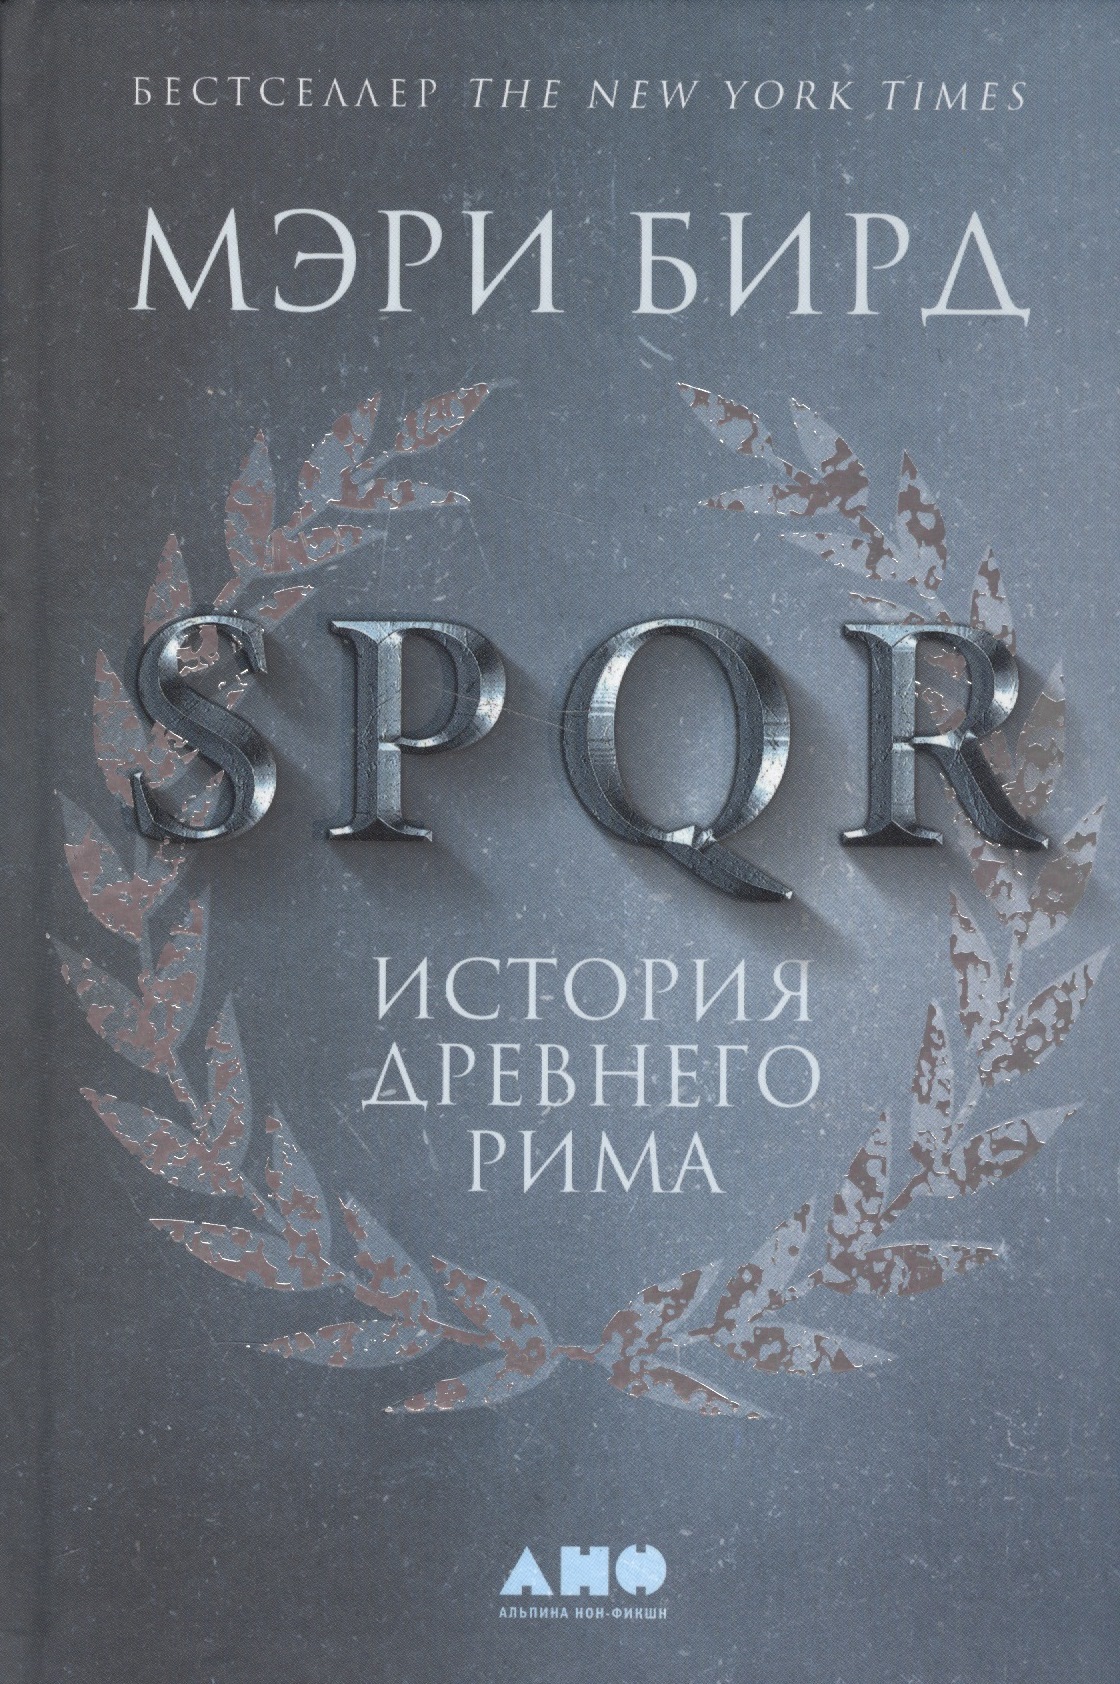 Бирд Мэри SPQR: История Древнего Рима мэри бирд женщины и власть манифест